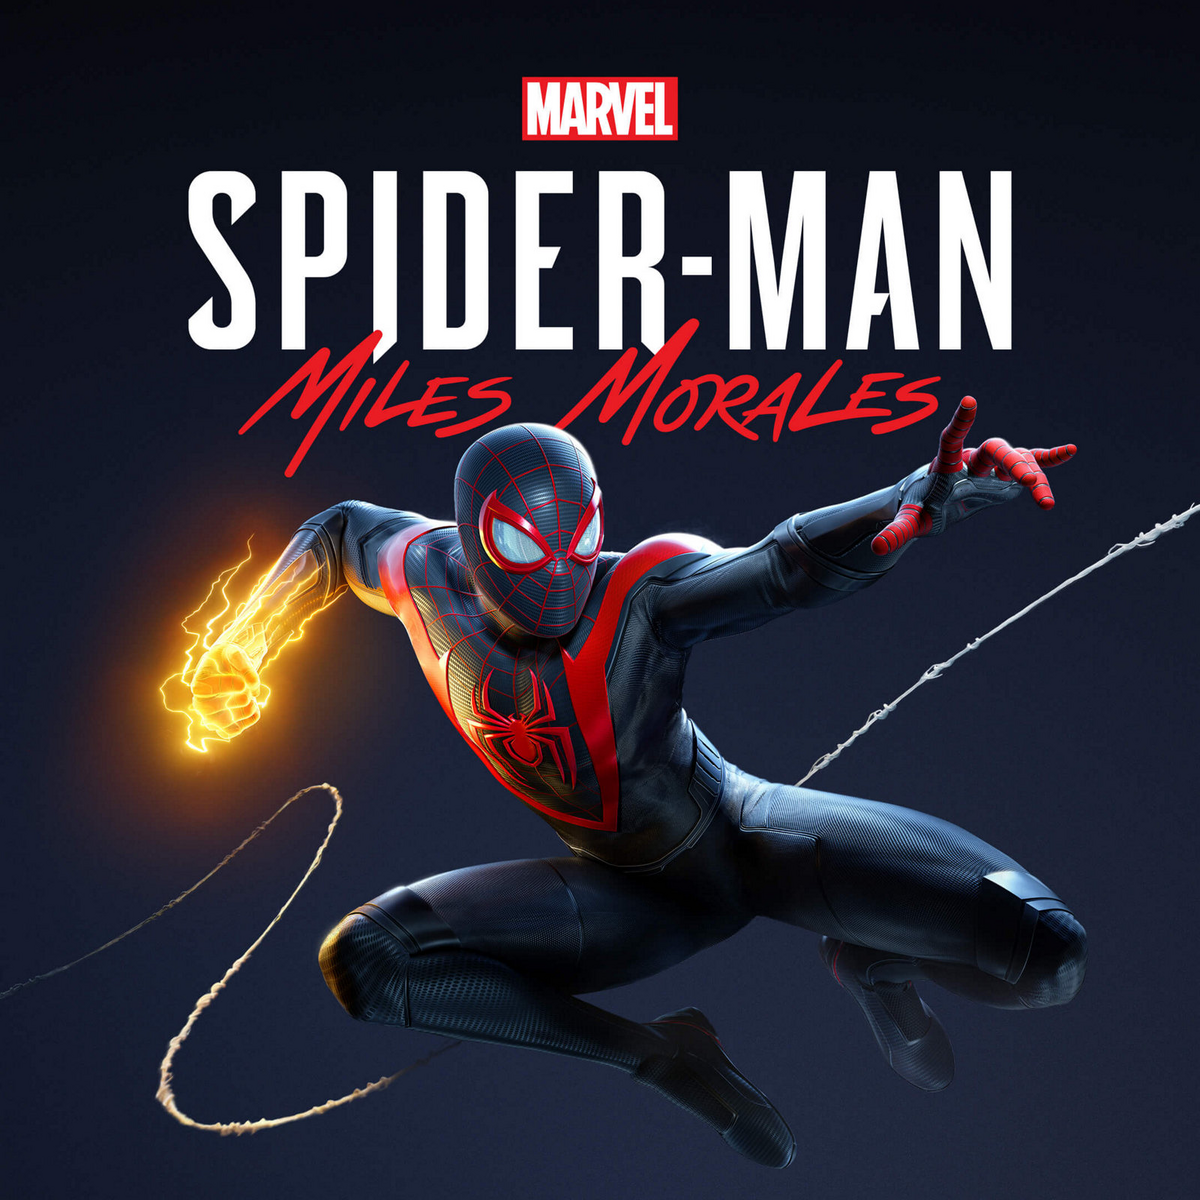 Nếu bạn yêu thích trò chơi Marvel\'s Spider-Man Miles Morales thì không thể bỏ qua bộ sưu tập ảnh liên quan đến trò chơi này. Hãy ngắm nhìn những hình ảnh và trải nghiệm cảm giác cuồng nhiệt của trò chơi!